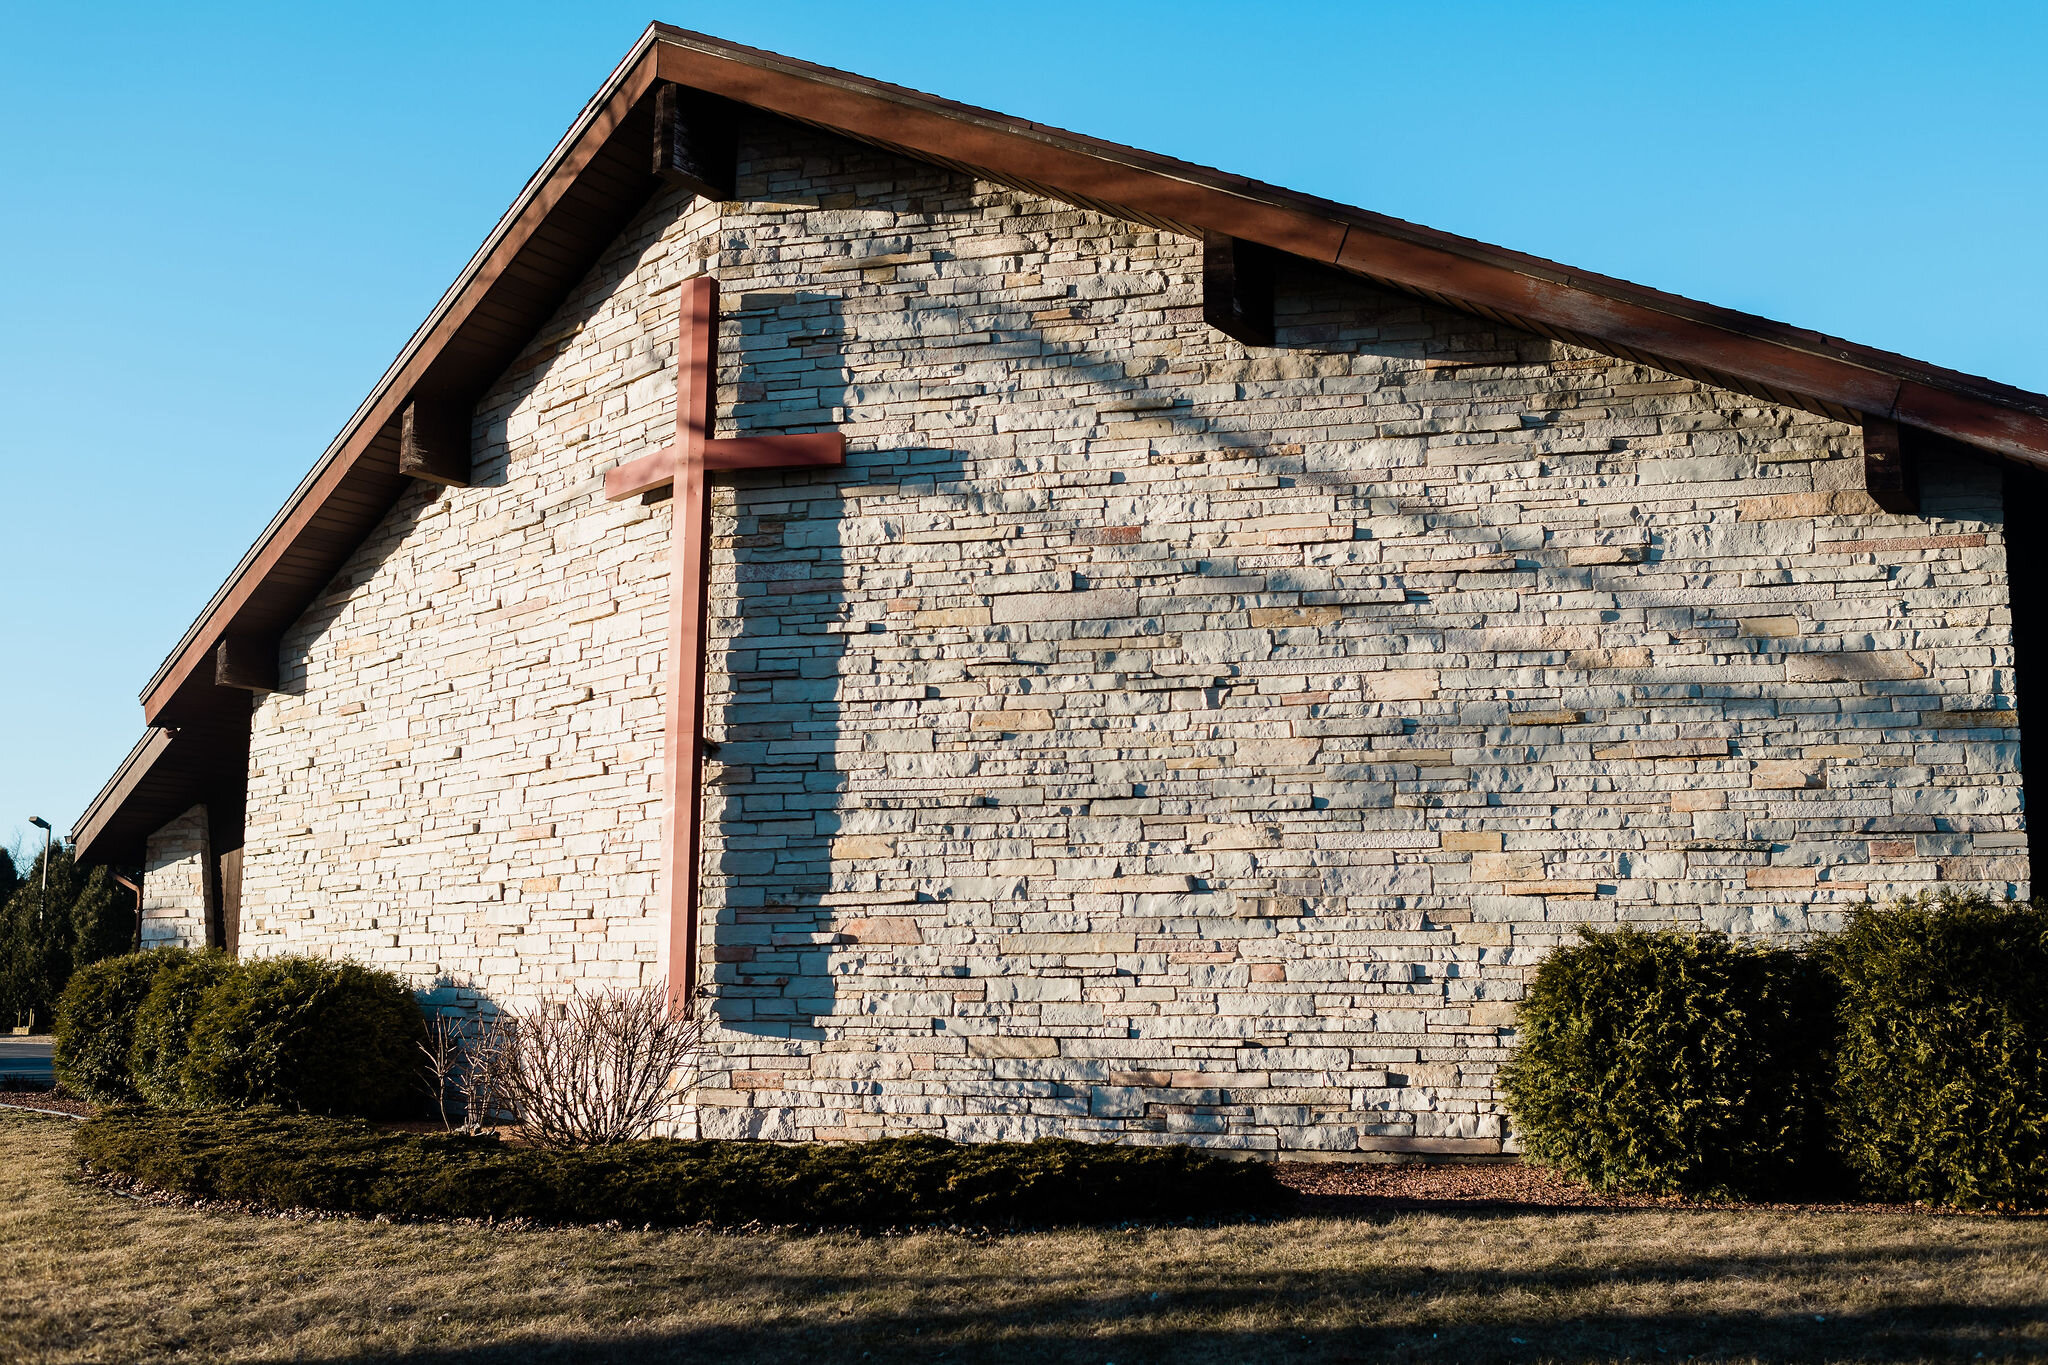 Barneveld Lutheran Church in Barneveld, Wisconsin